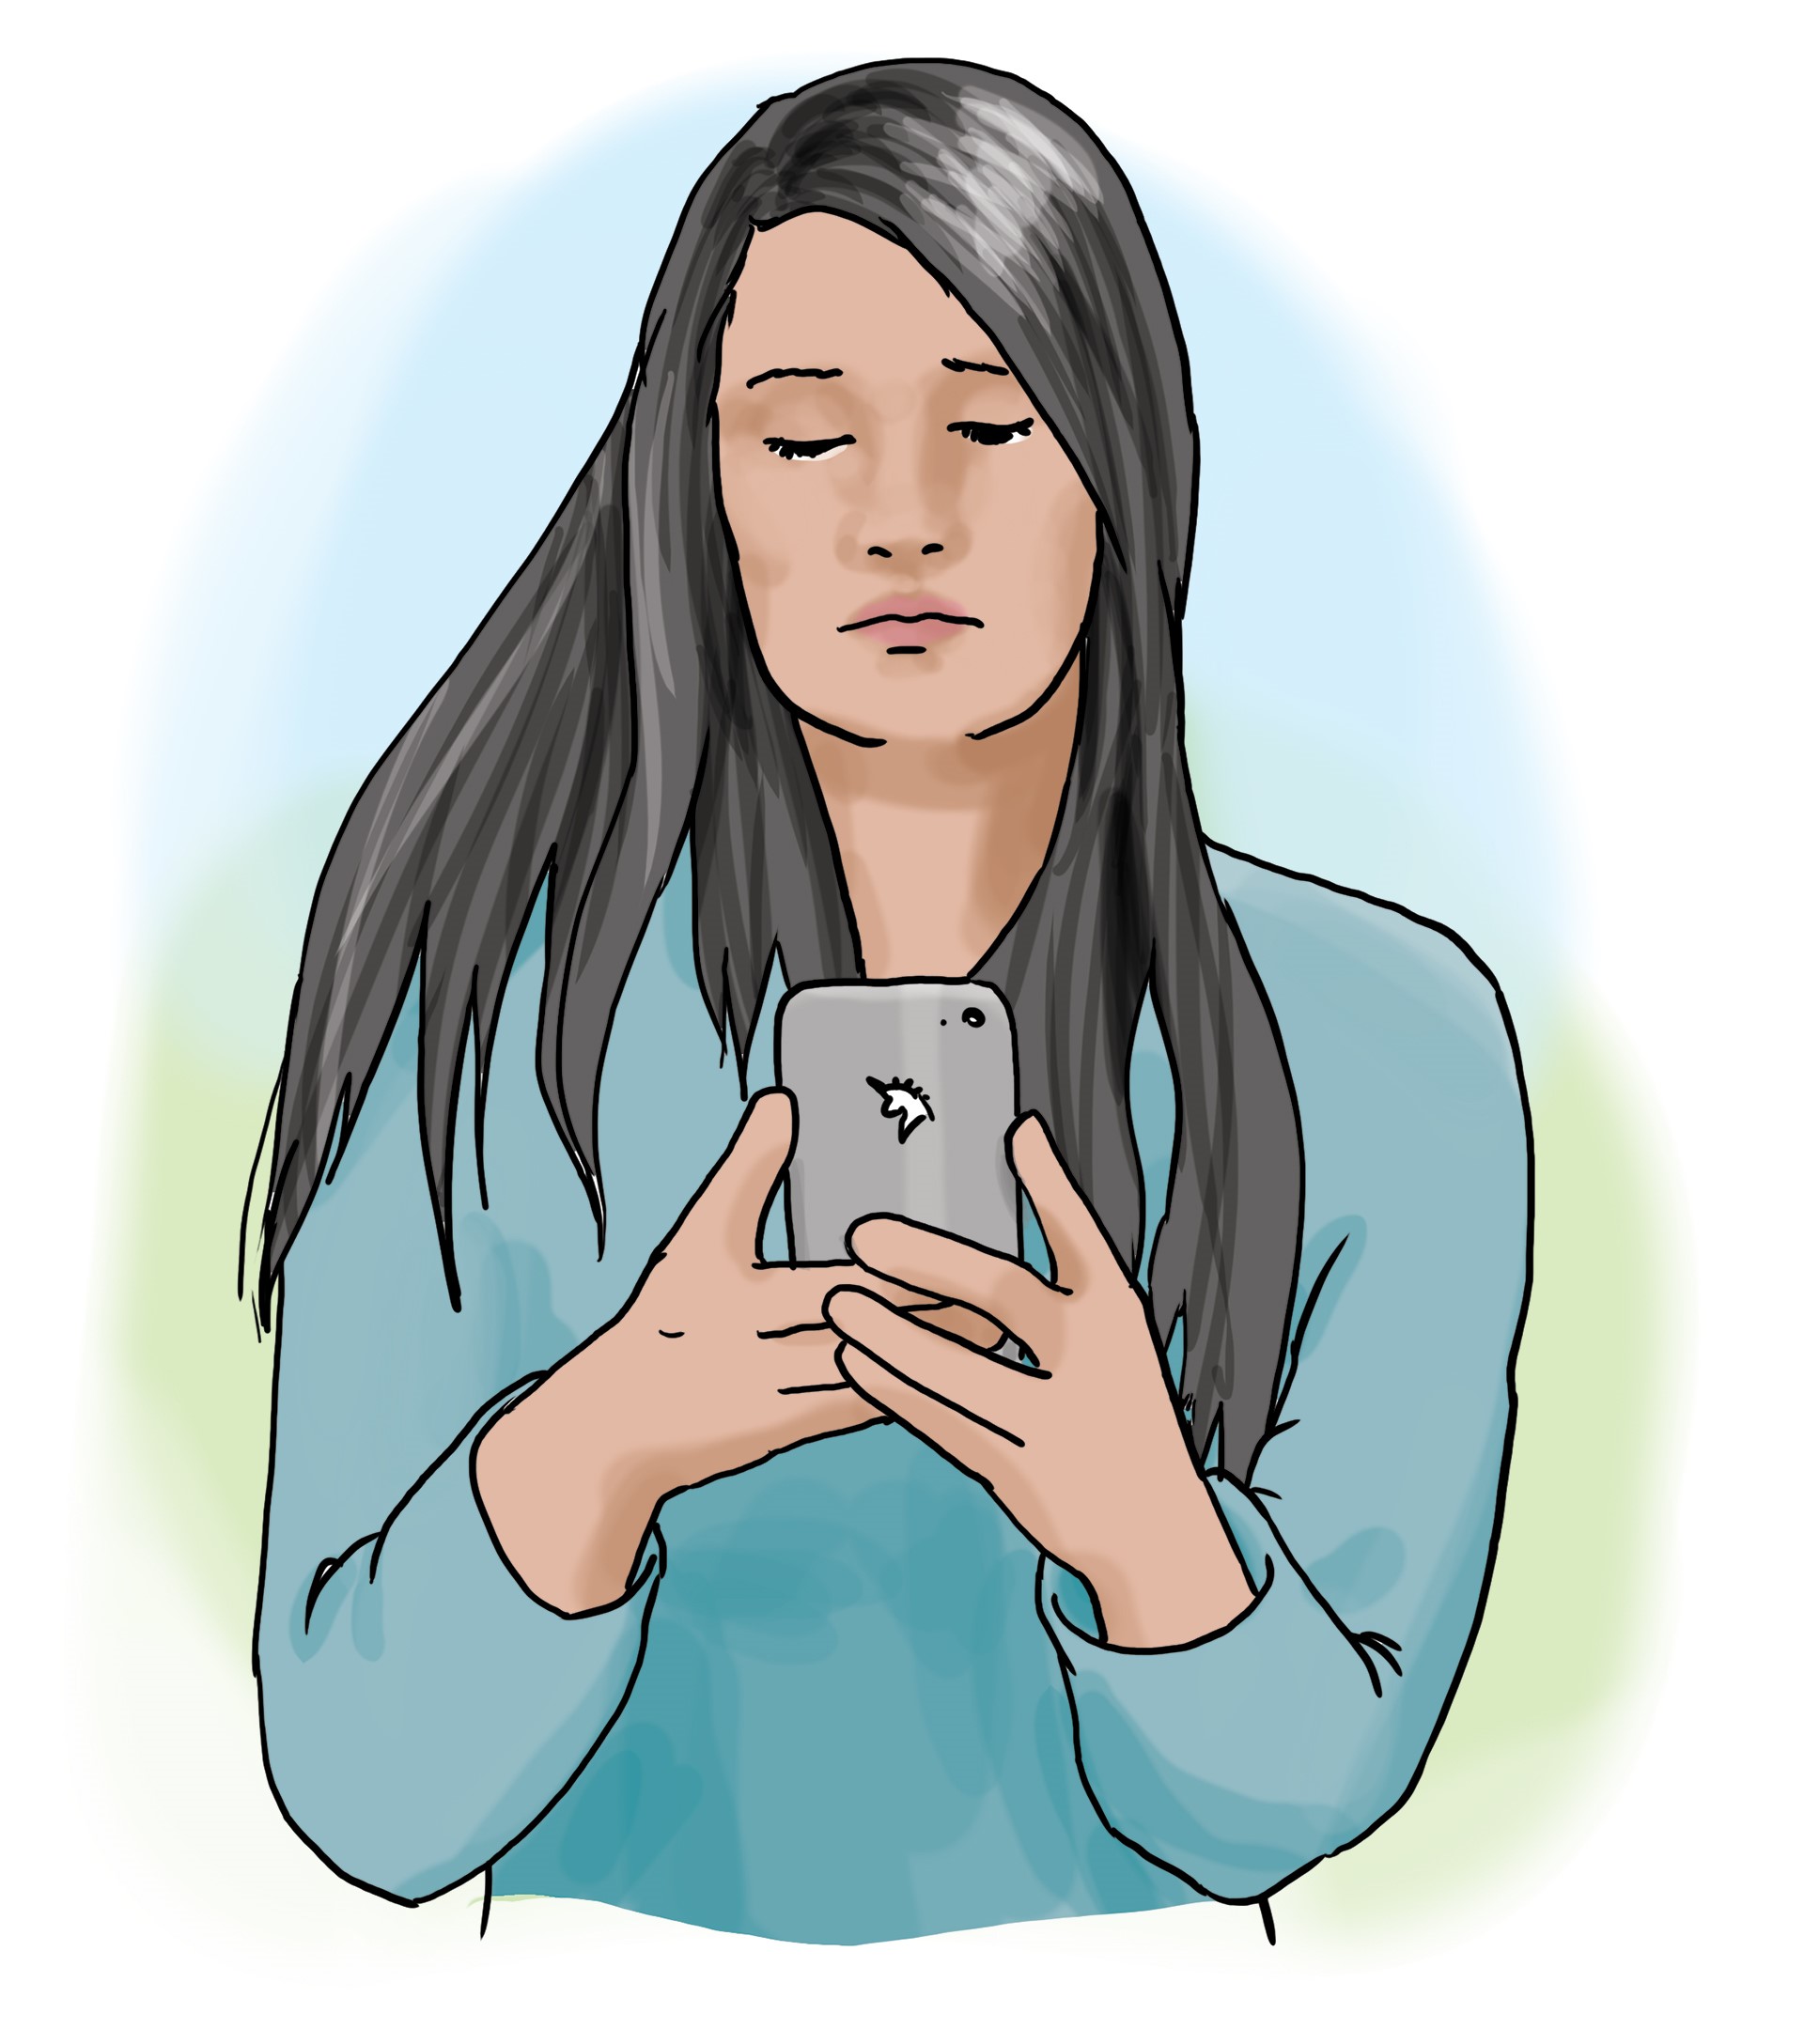 eine junge Frau mit langen schwarzen Haaren schaut auf das Handy, welches sie in der Hand hält und auf welchem sie tippt.